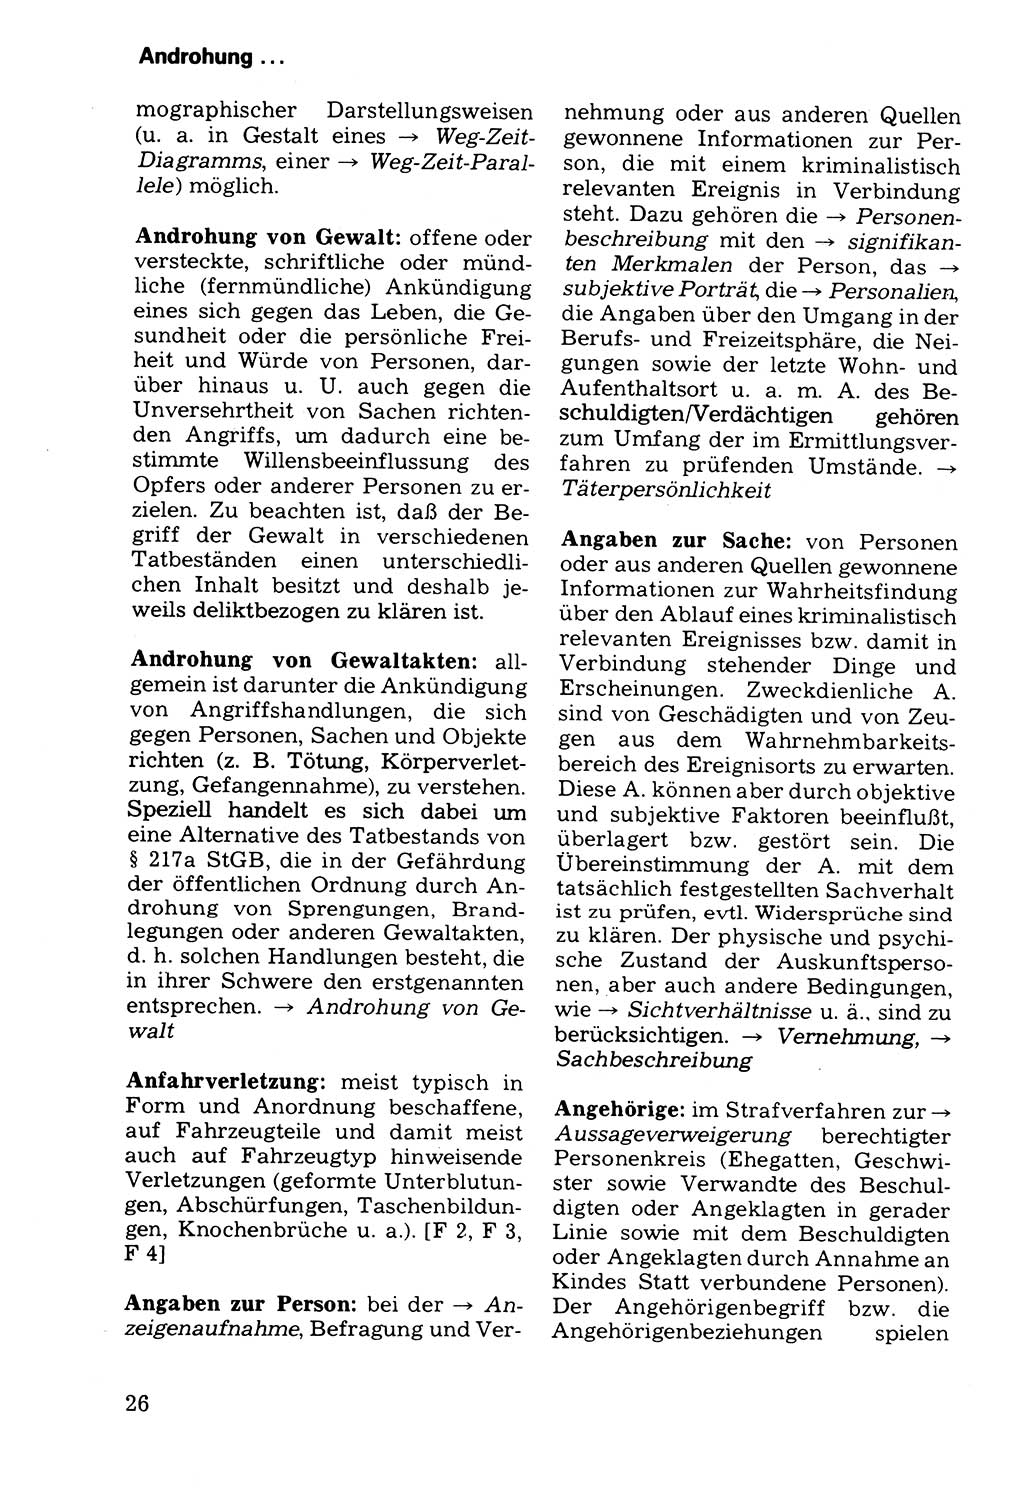 Wörterbuch der sozialistischen Kriminalistik [Deutsche Demokratische Republik (DDR)] 1981, Seite 26 (Wb. soz. Krim. DDR 1981, S. 26)